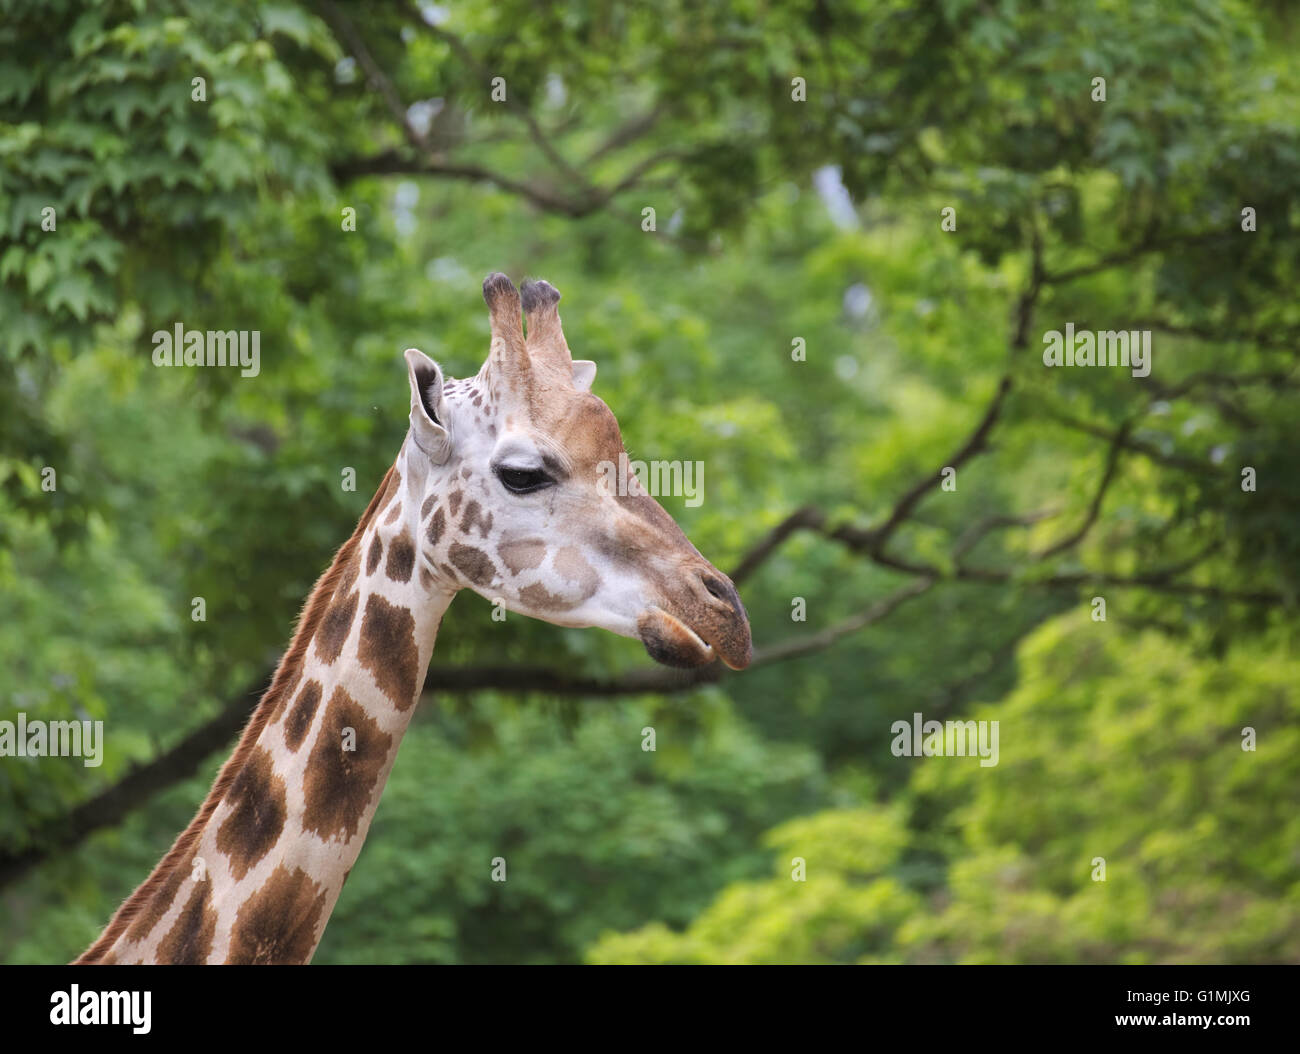 Testa della giraffa Rothschild (Giraffa camelopardalis rothschildi) nella parte anteriore di alberi verdi. Foto Stock